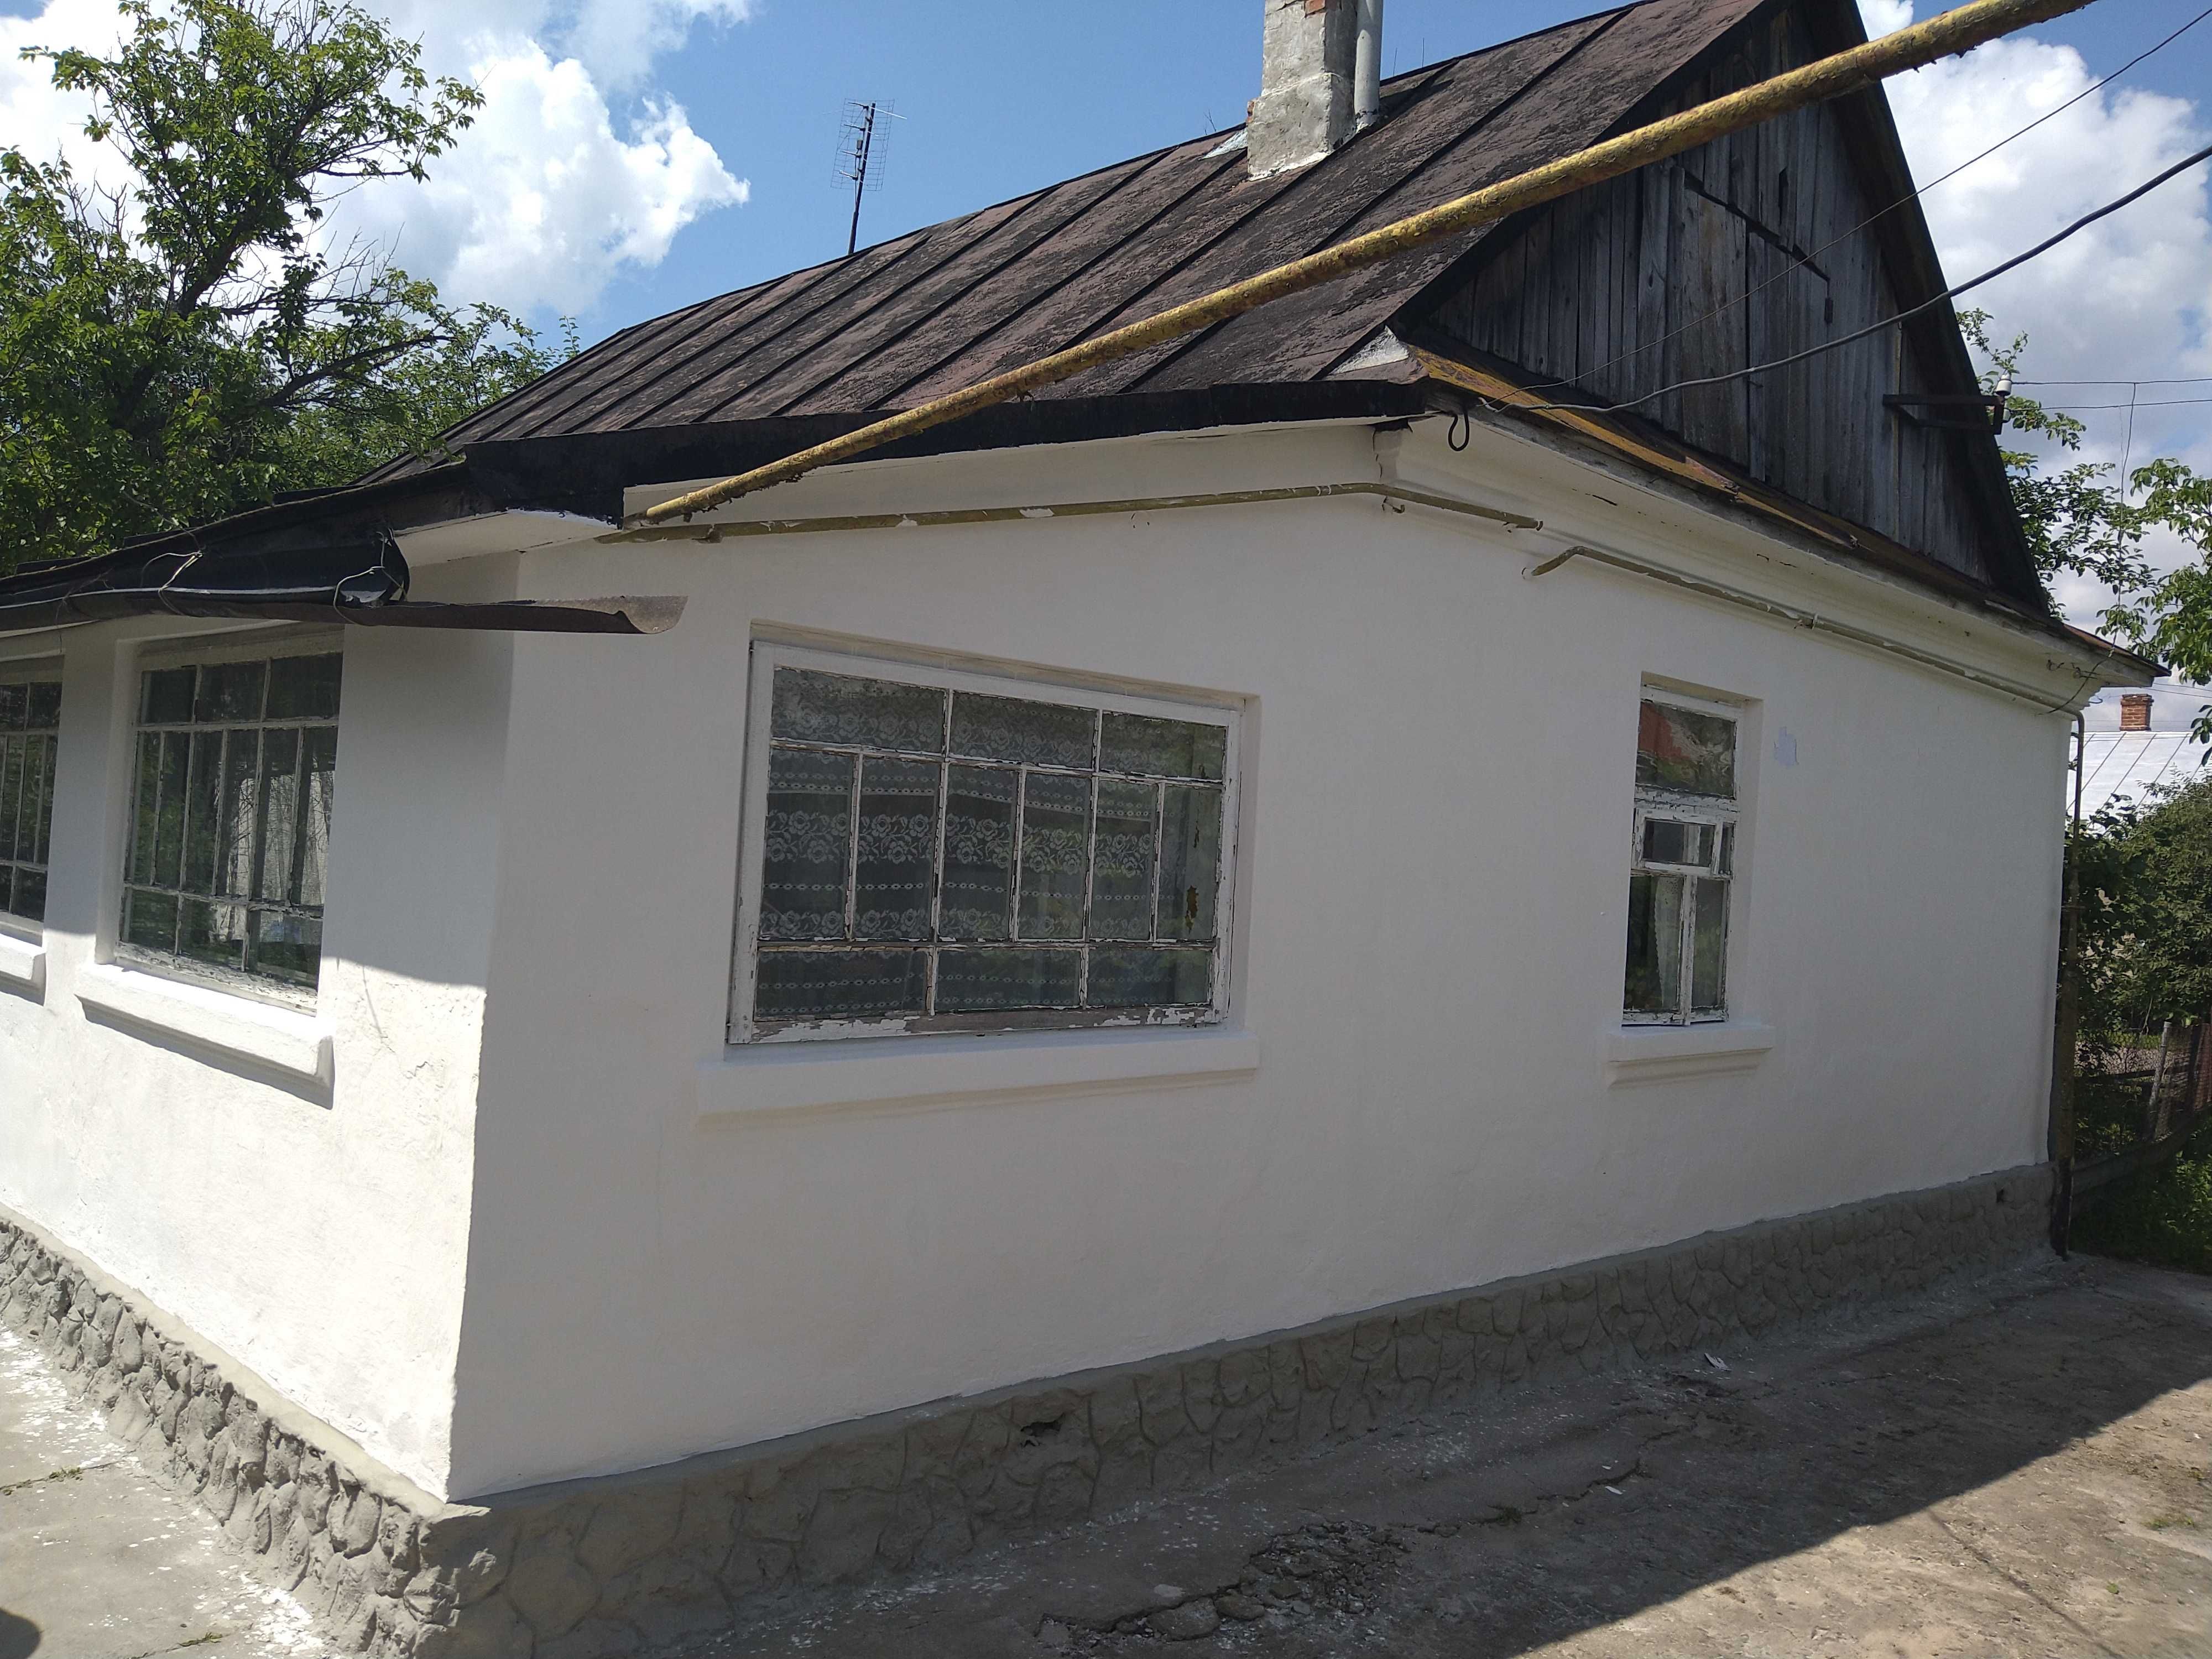 Продаж будинку та земельної ділянки 50 соток, місто Берестечко